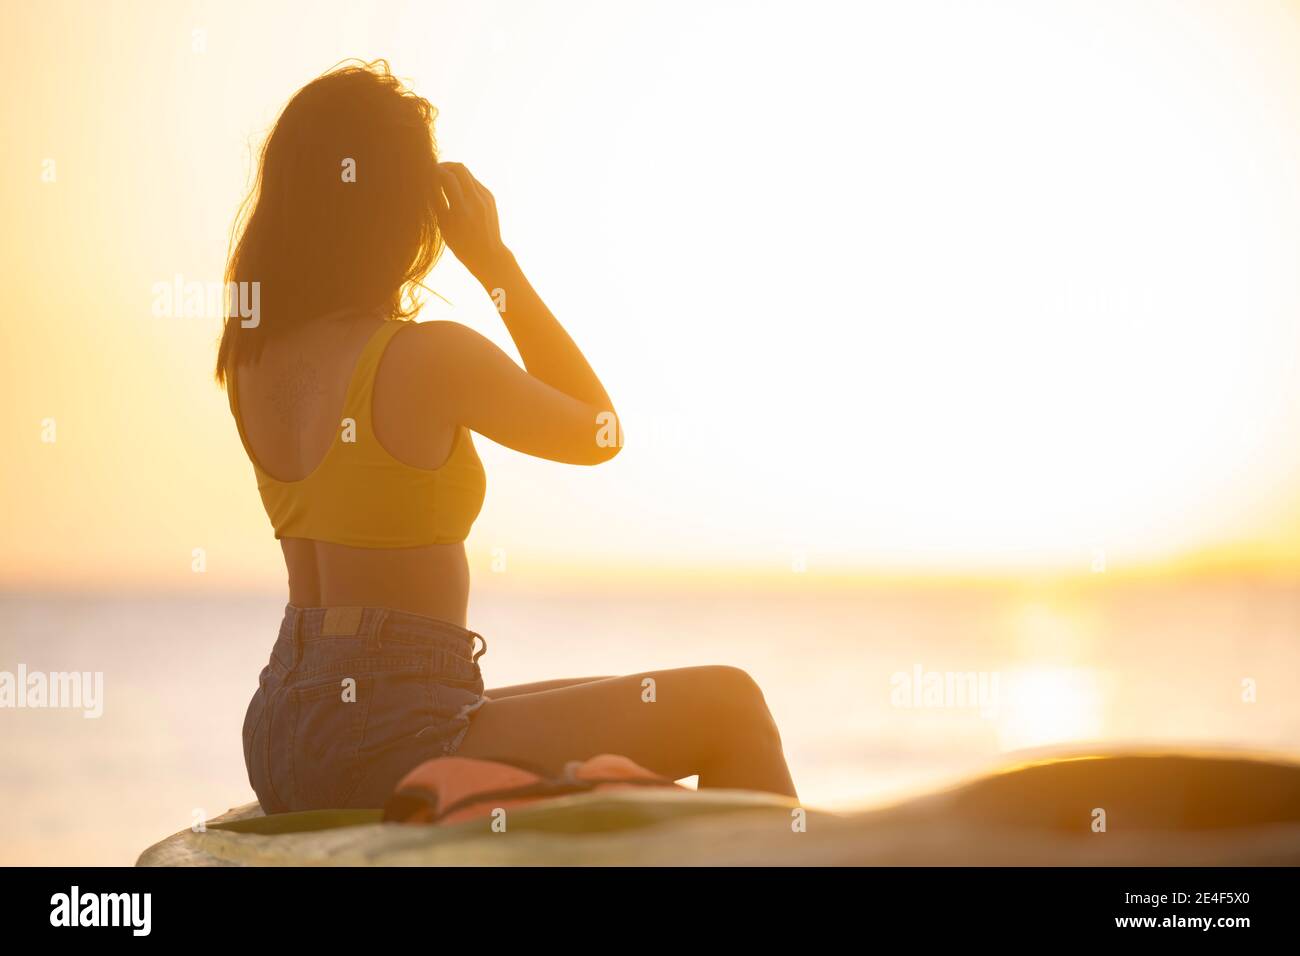 Fuoco selettivo) vista mozzafiato della sagoma di una ragazza che cammina  su una spiaggia durante un tramonto bello e romantico. Boracay, Filippine  Foto stock - Alamy